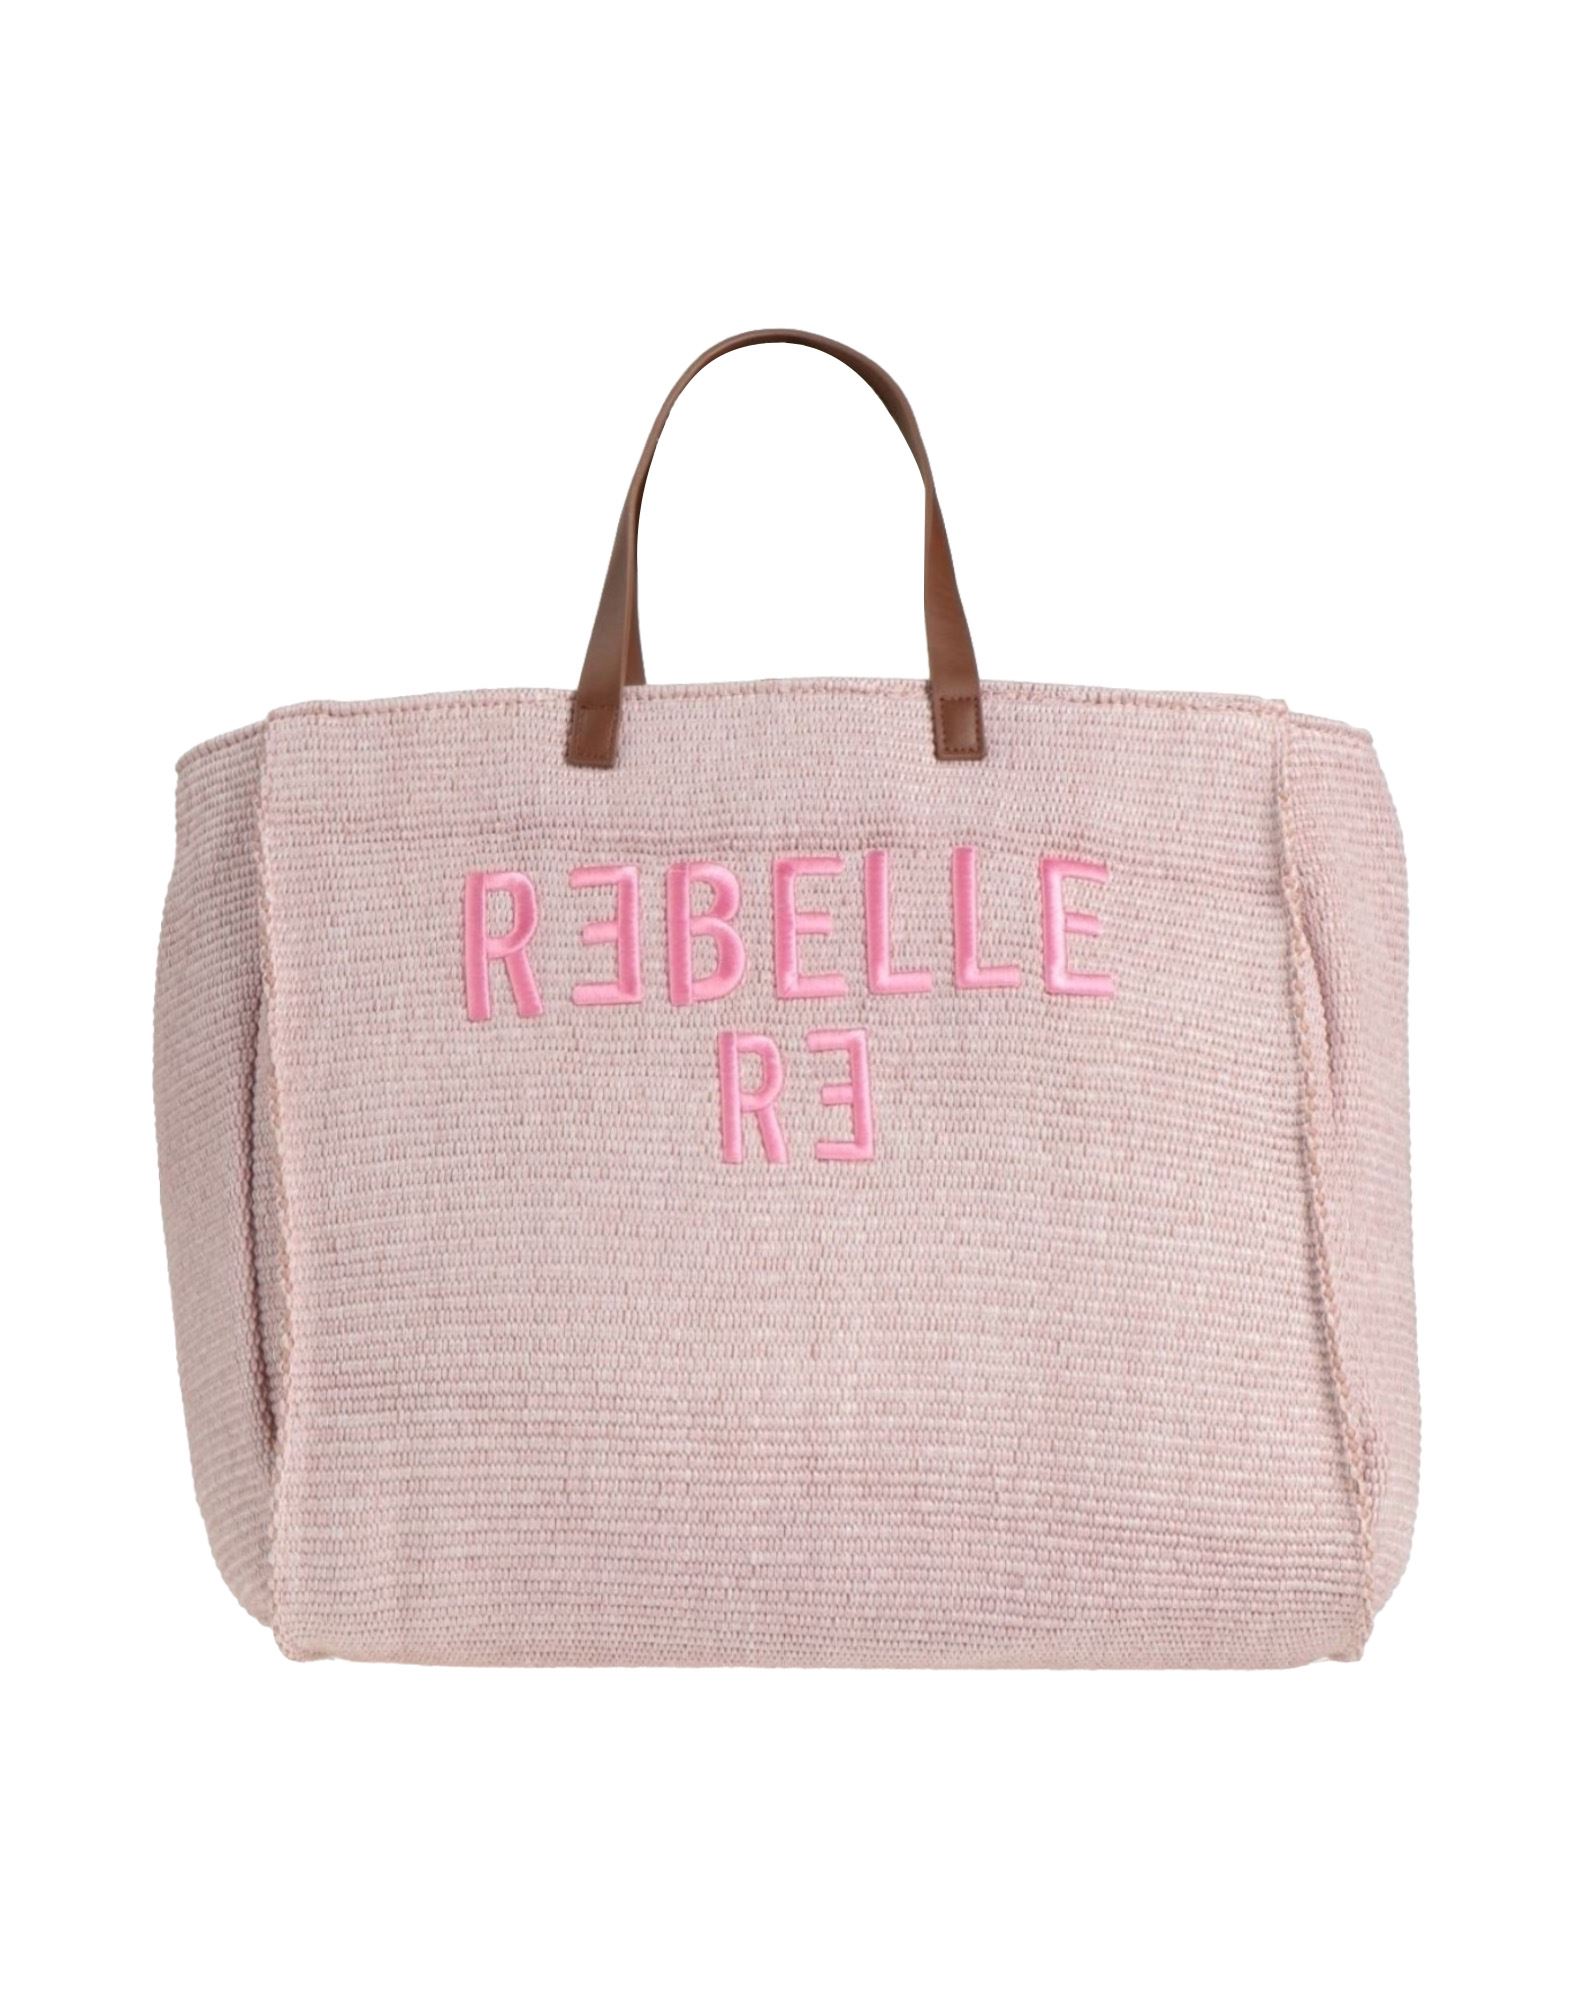 Rebelle Handbags In Pink